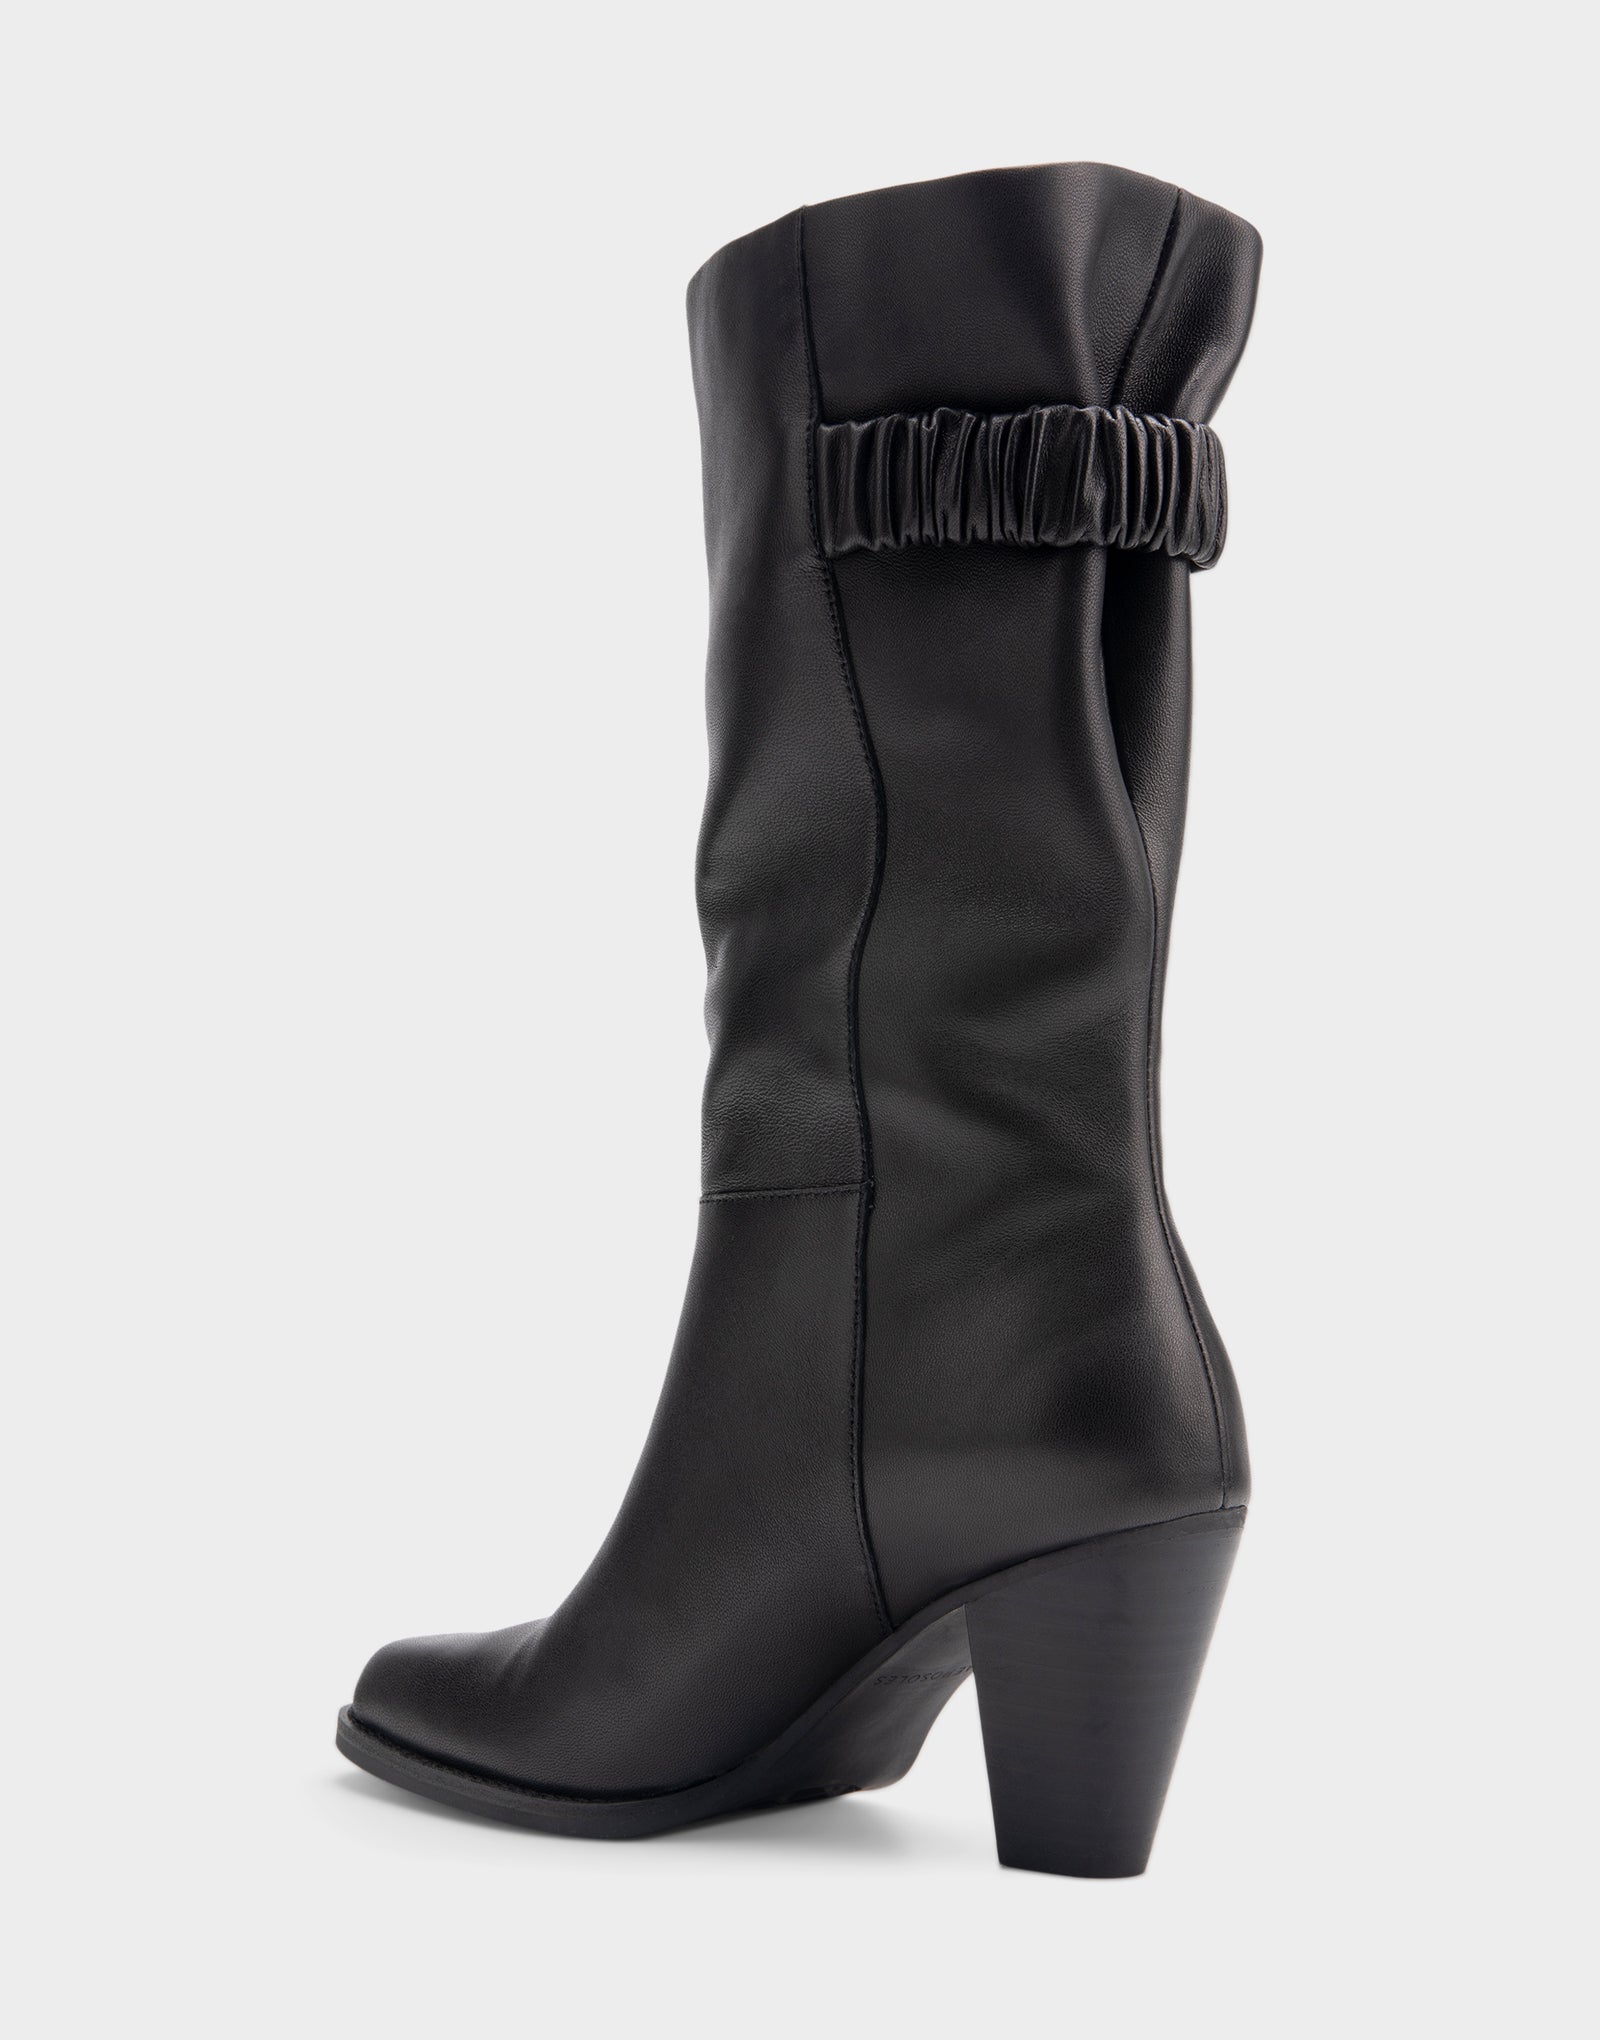 Women's Heeled Midcalf Boot in Black